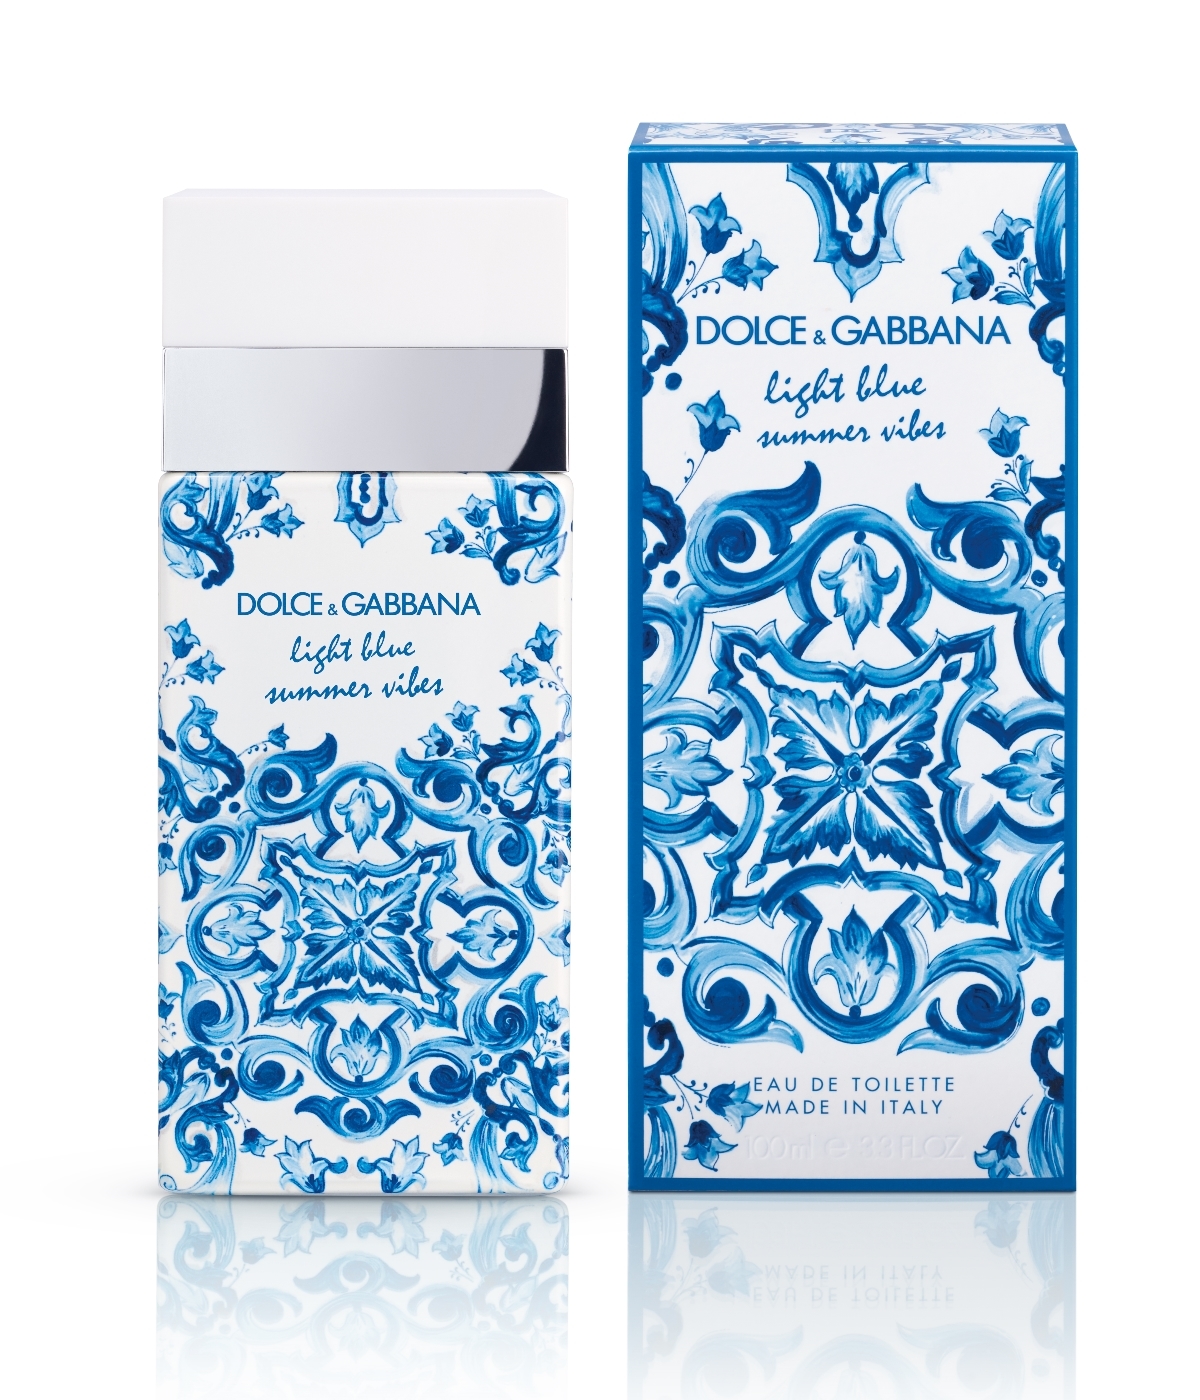 Light Blue Summer Vibes de Dolce & Gabbana.